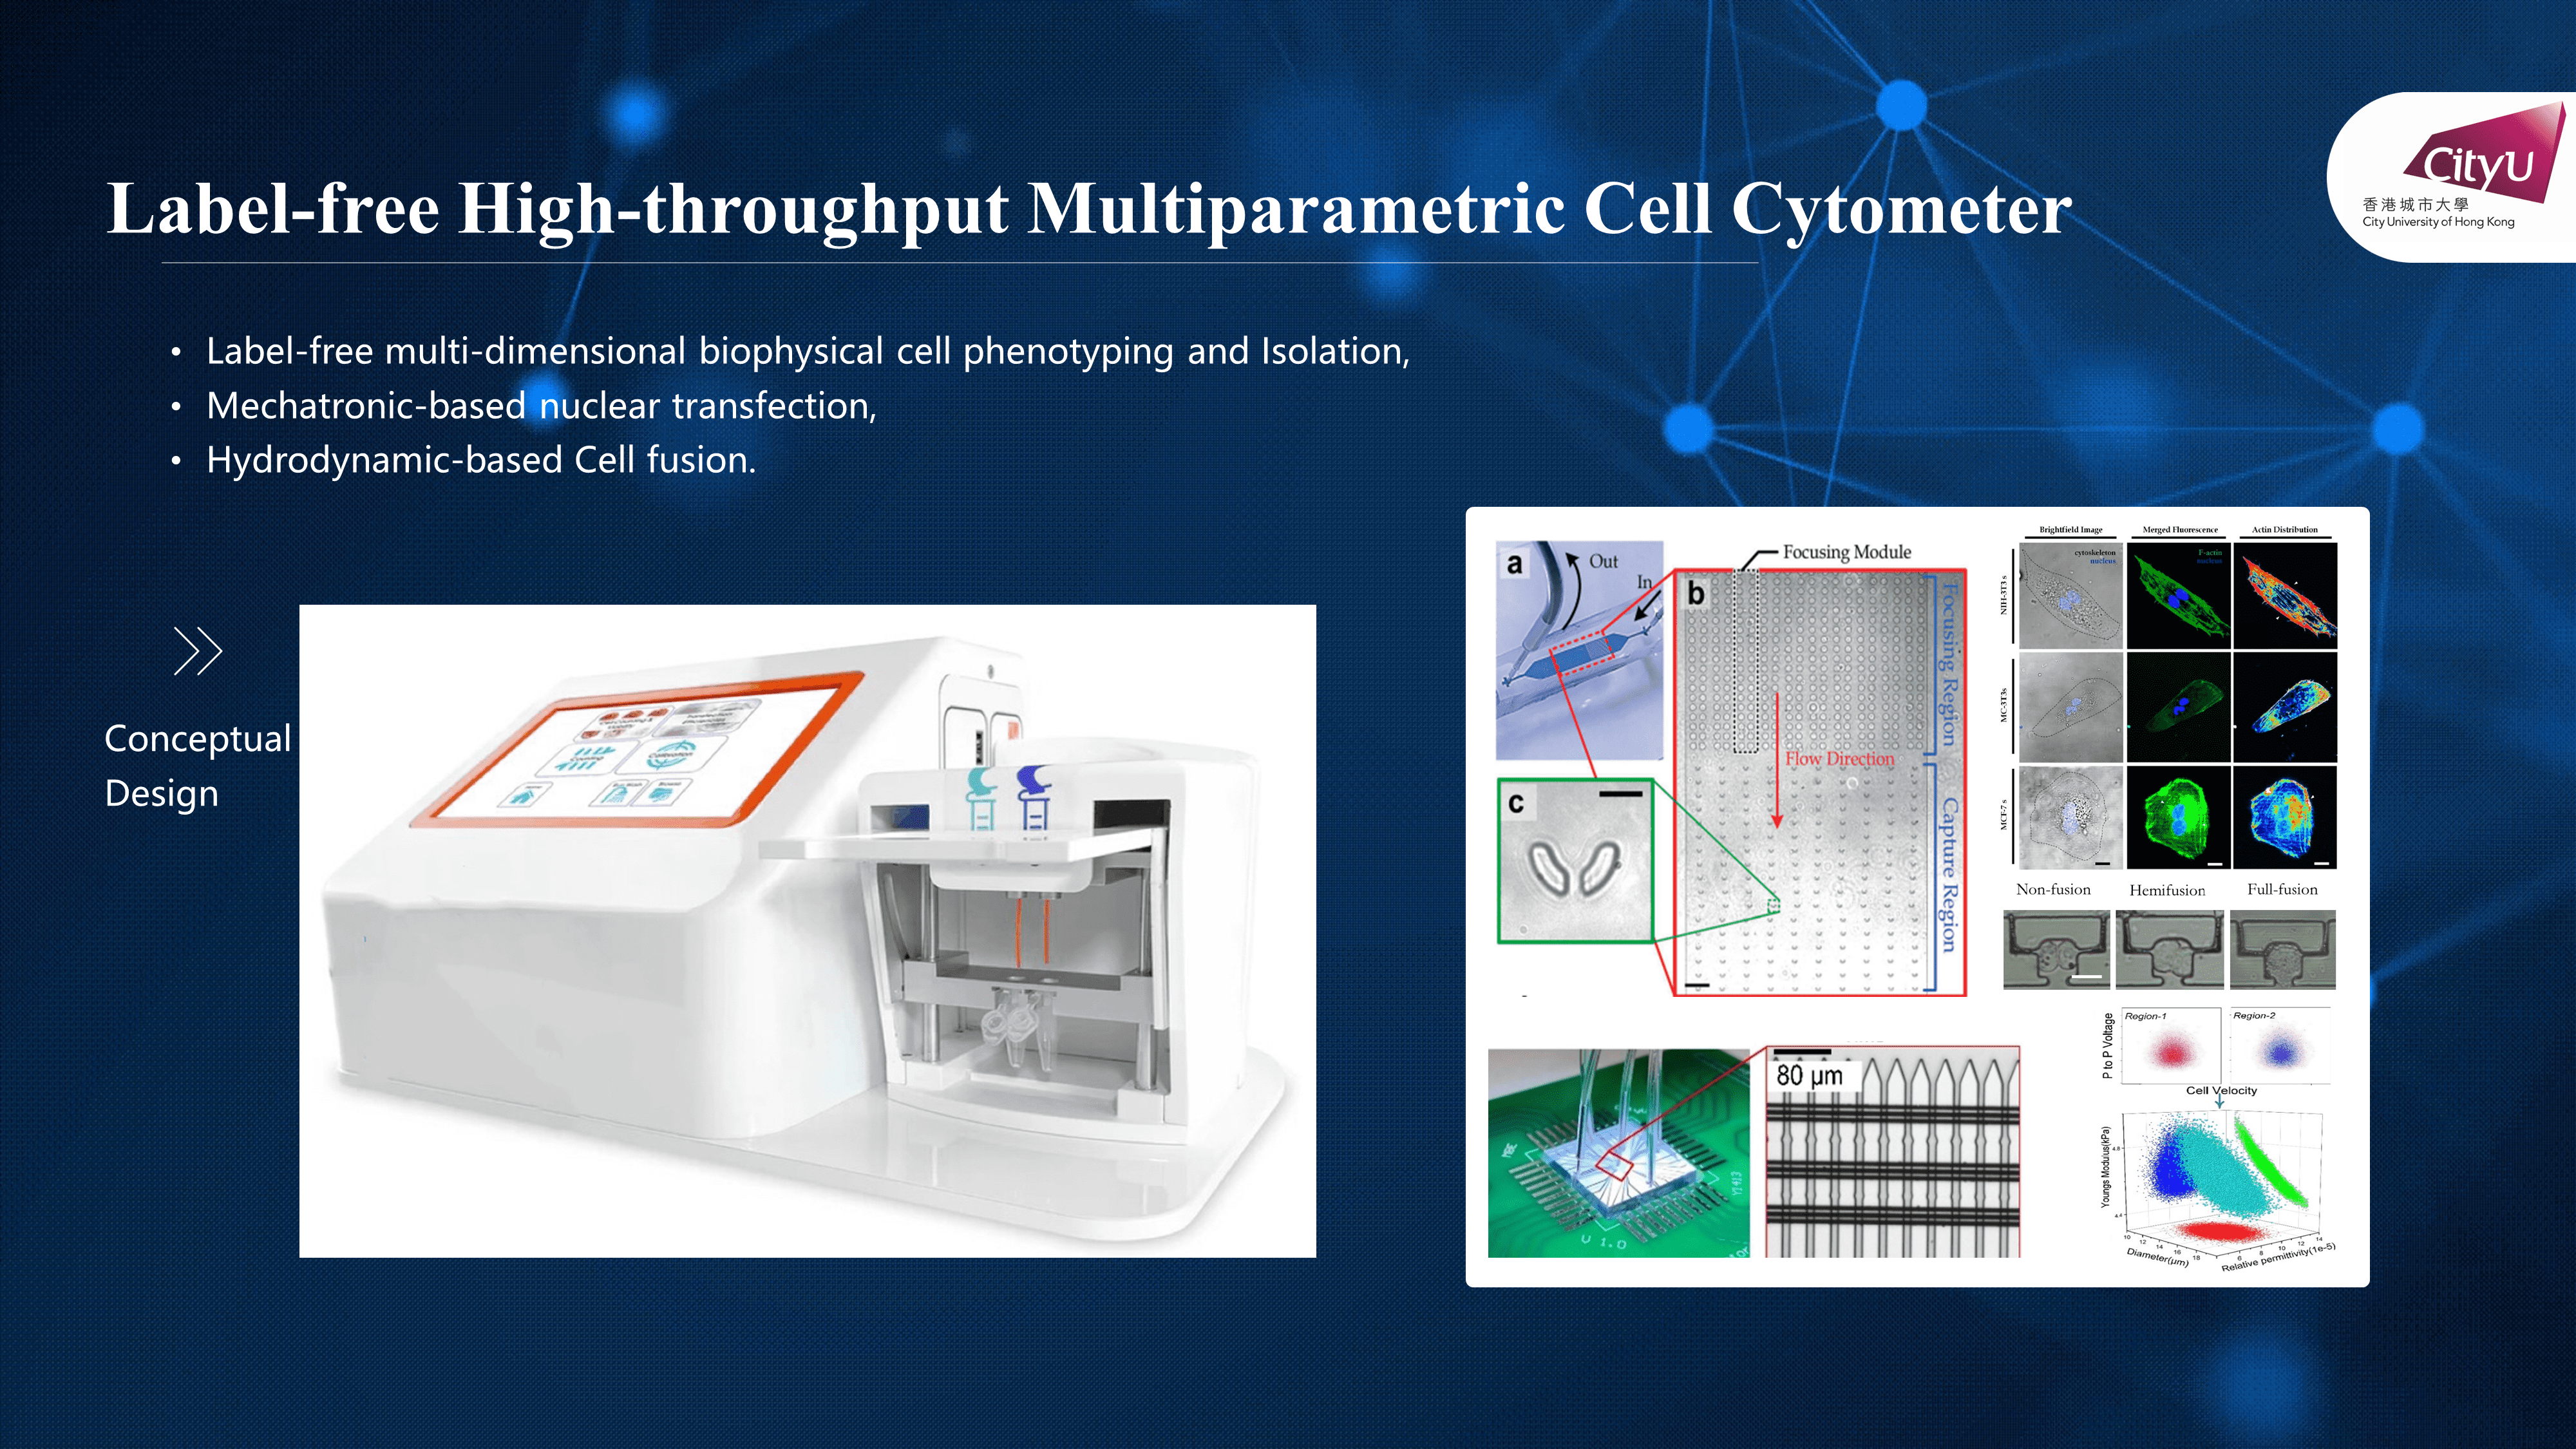 高通量無標記細胞力學流式檢測系統